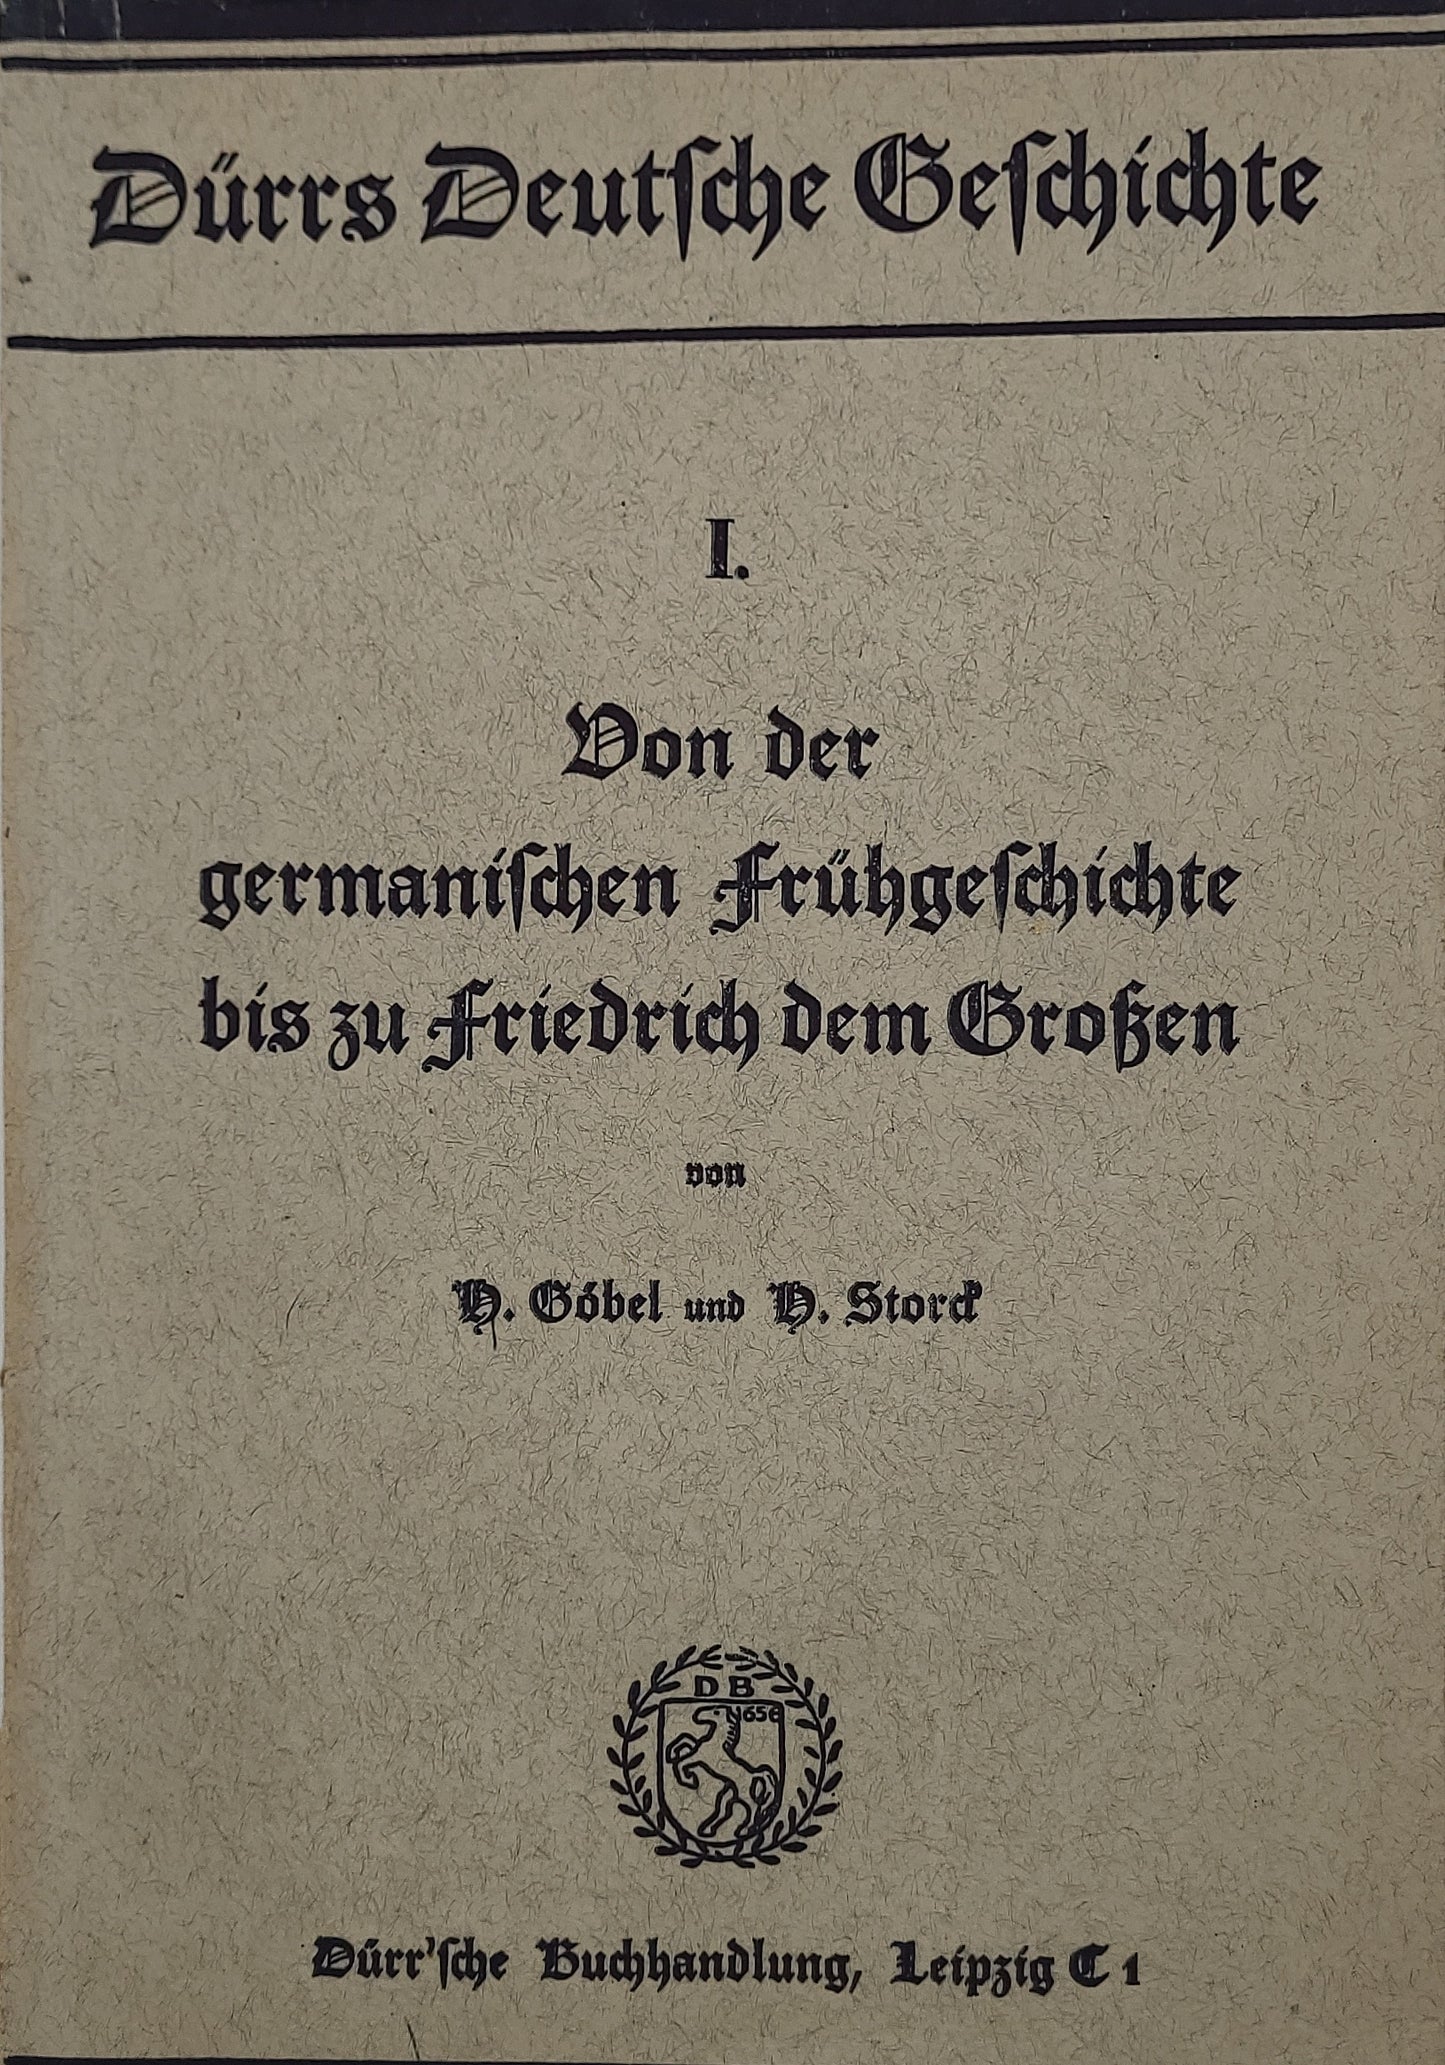 Von der germanischen Frühgeschichte bis zu Friedrich dem Großen